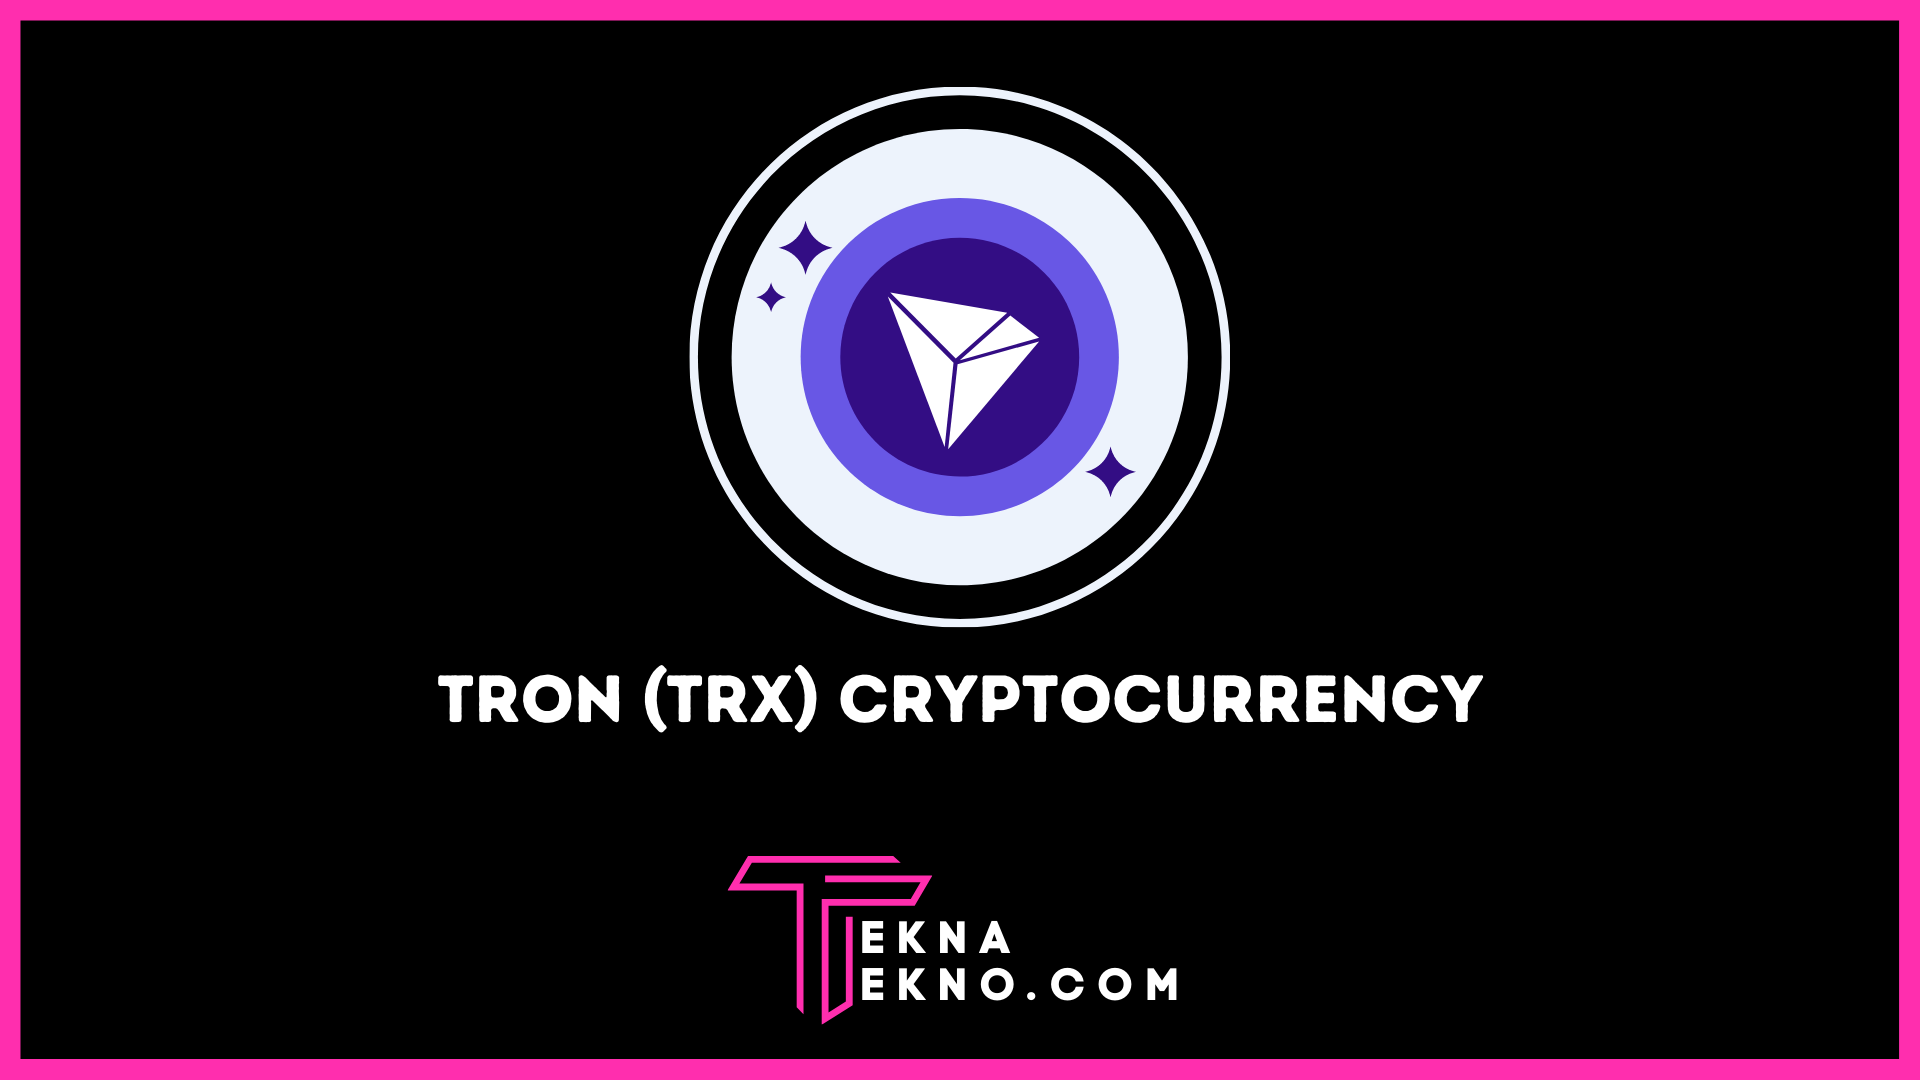 Tron (TRX) Cryptocurrency: Pengertian, Harga dan Prediksi